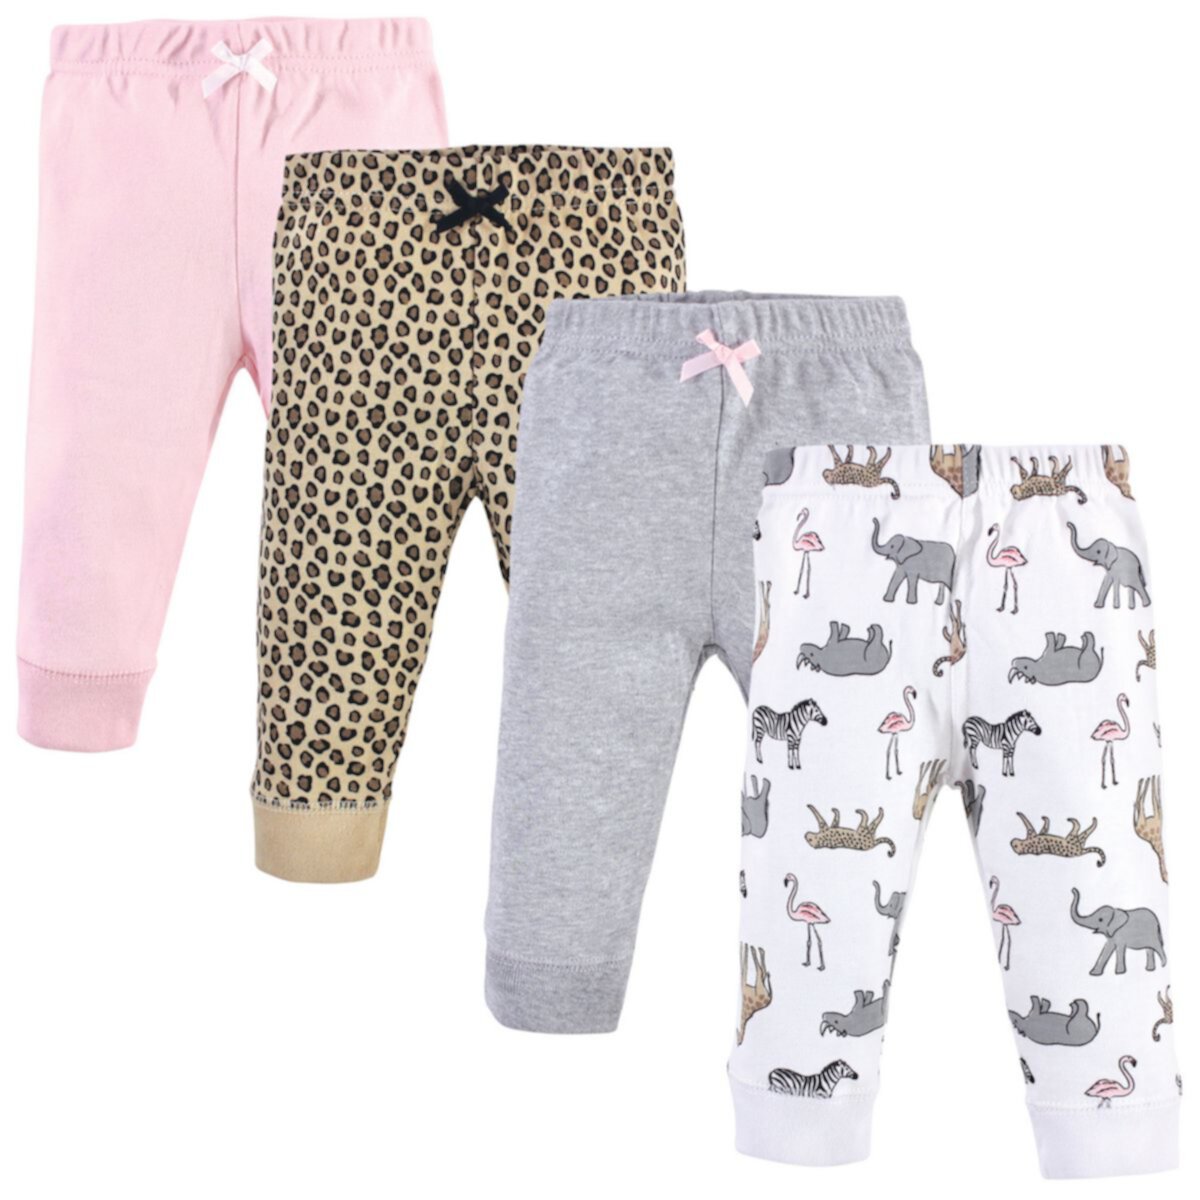 Hudson Baby Infant and Toddler Girl Cotton Pants 4pk, Modern Pink Safari Hudson Baby